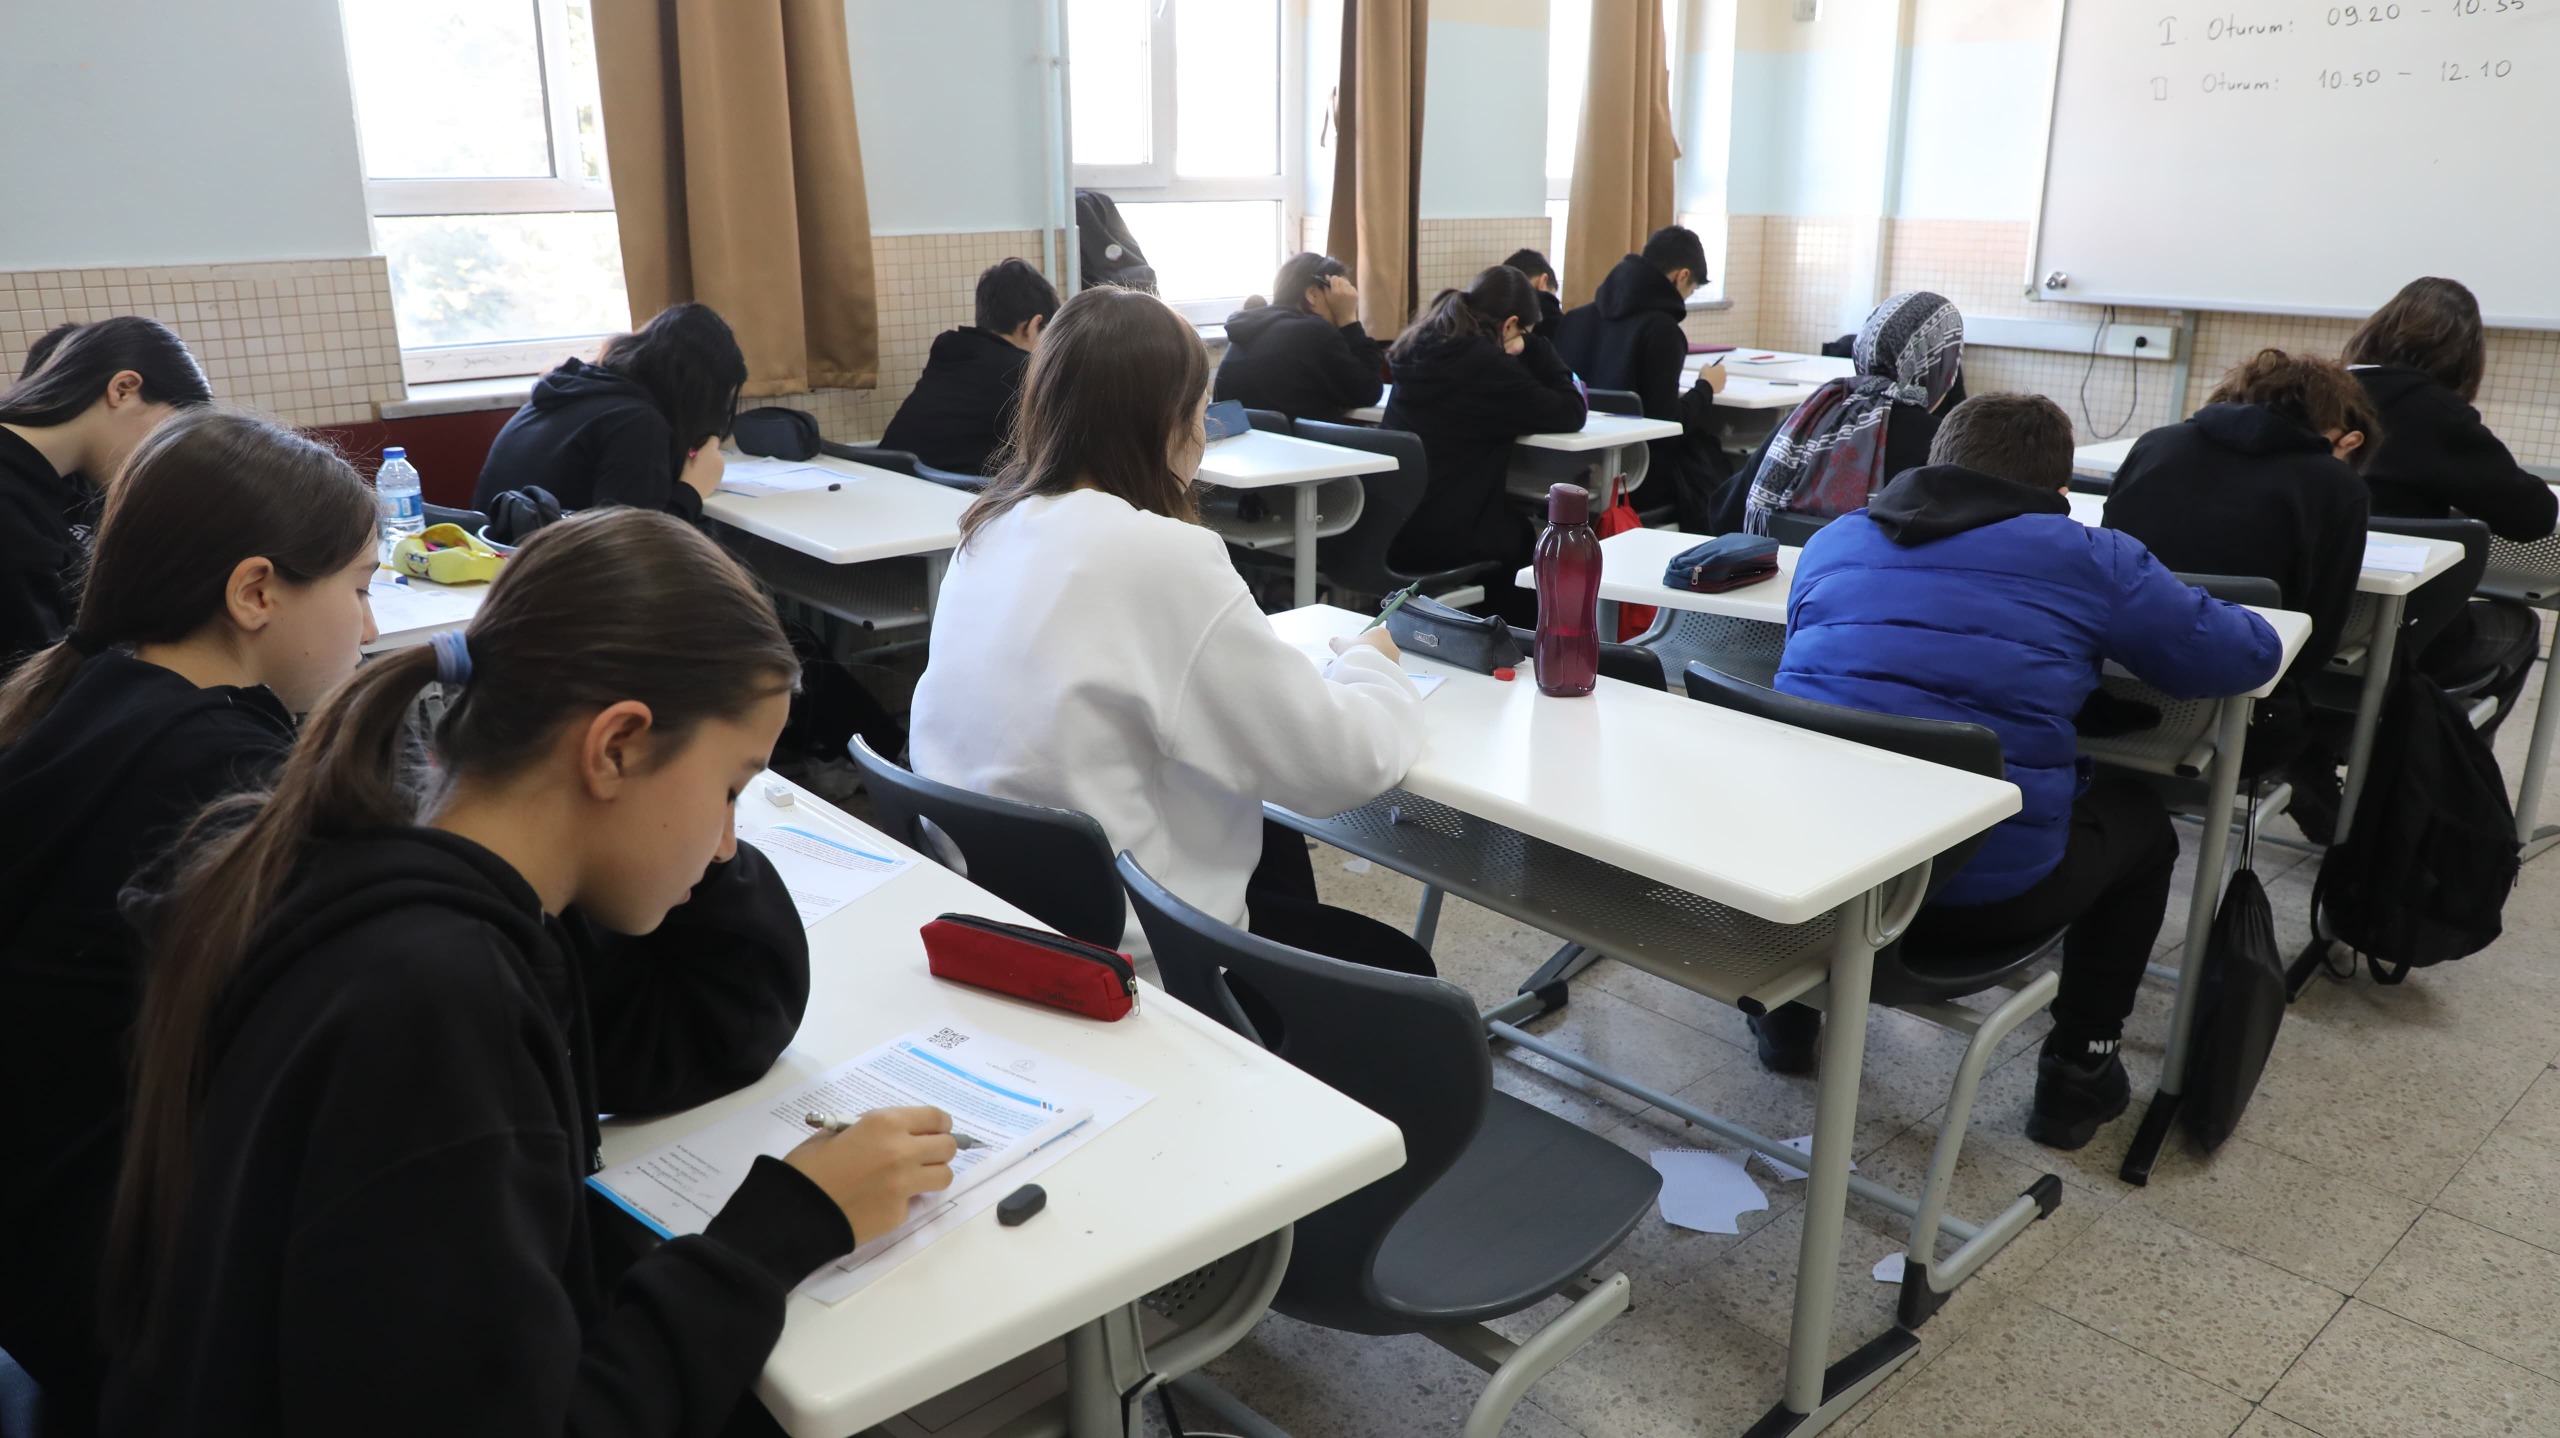 Başkan Altay: ”86 binden fazla öğrencimize yönelik sınavlar düzenlenmeye devam ediyoruz”